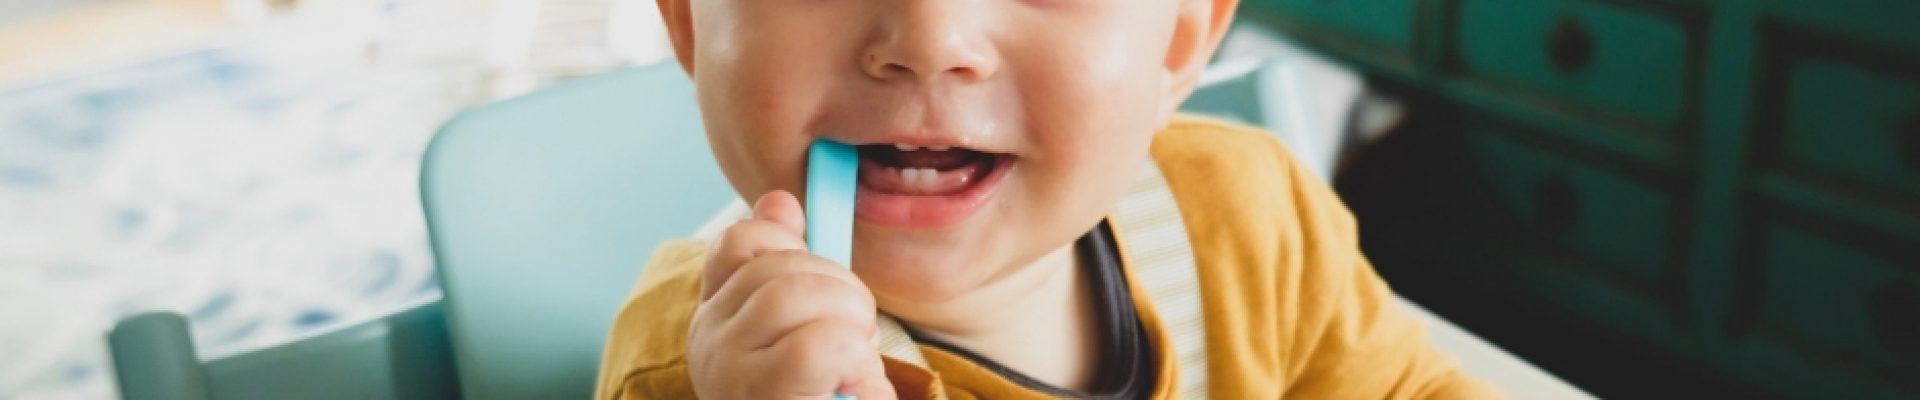 evitar las caries en niños Cómo influye la dieta en la salud oral de nuestros hijos Clinica Dental Achutegui Tu dentista en Amara Donostia San Sebastian